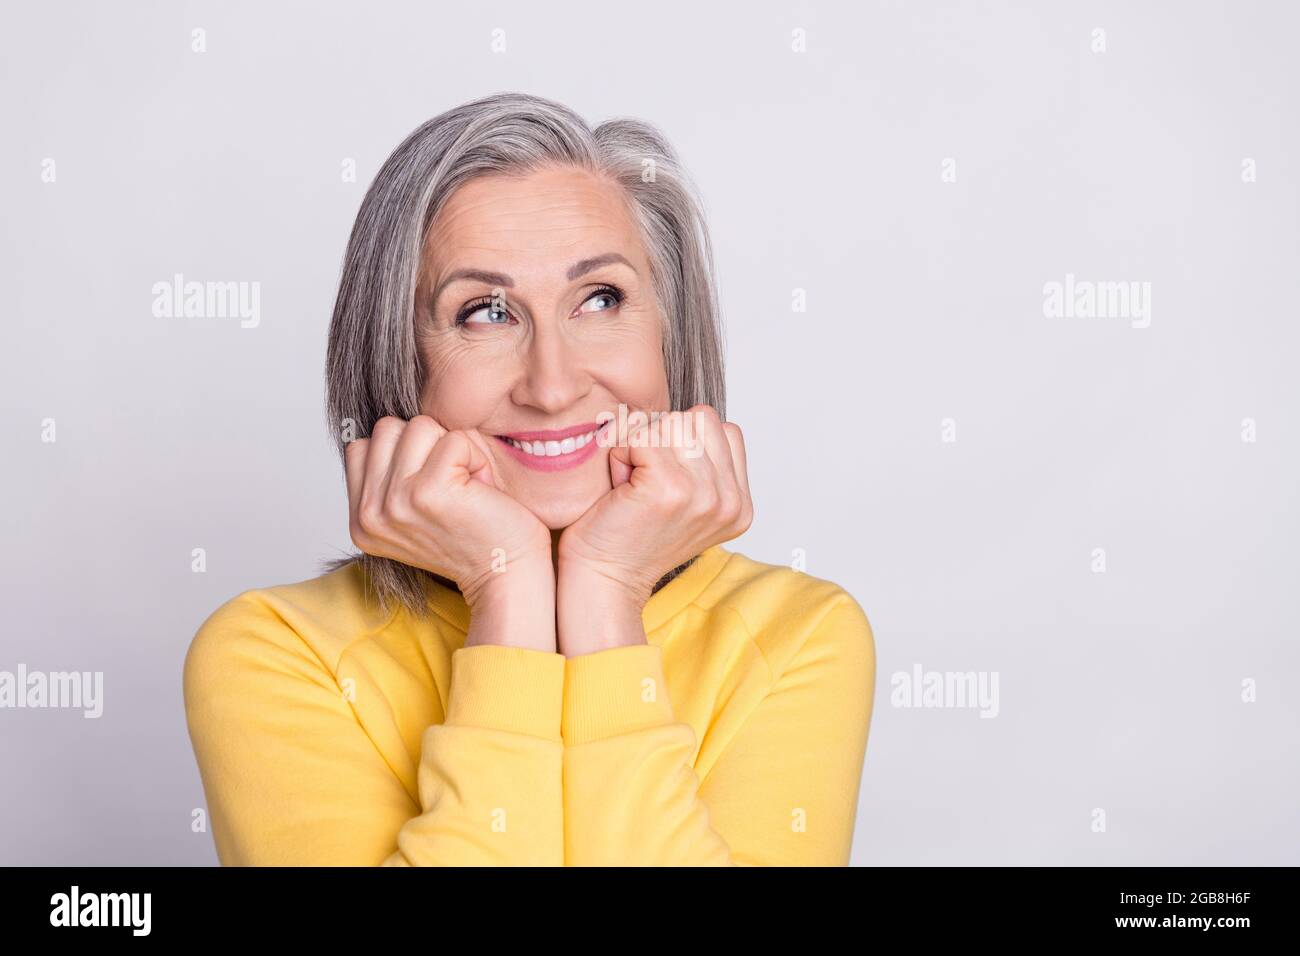 Photo de bonne humeur heureuse rêveuse charmante femme mature look copyspace adoring isolé sur fond gris couleur Banque D'Images